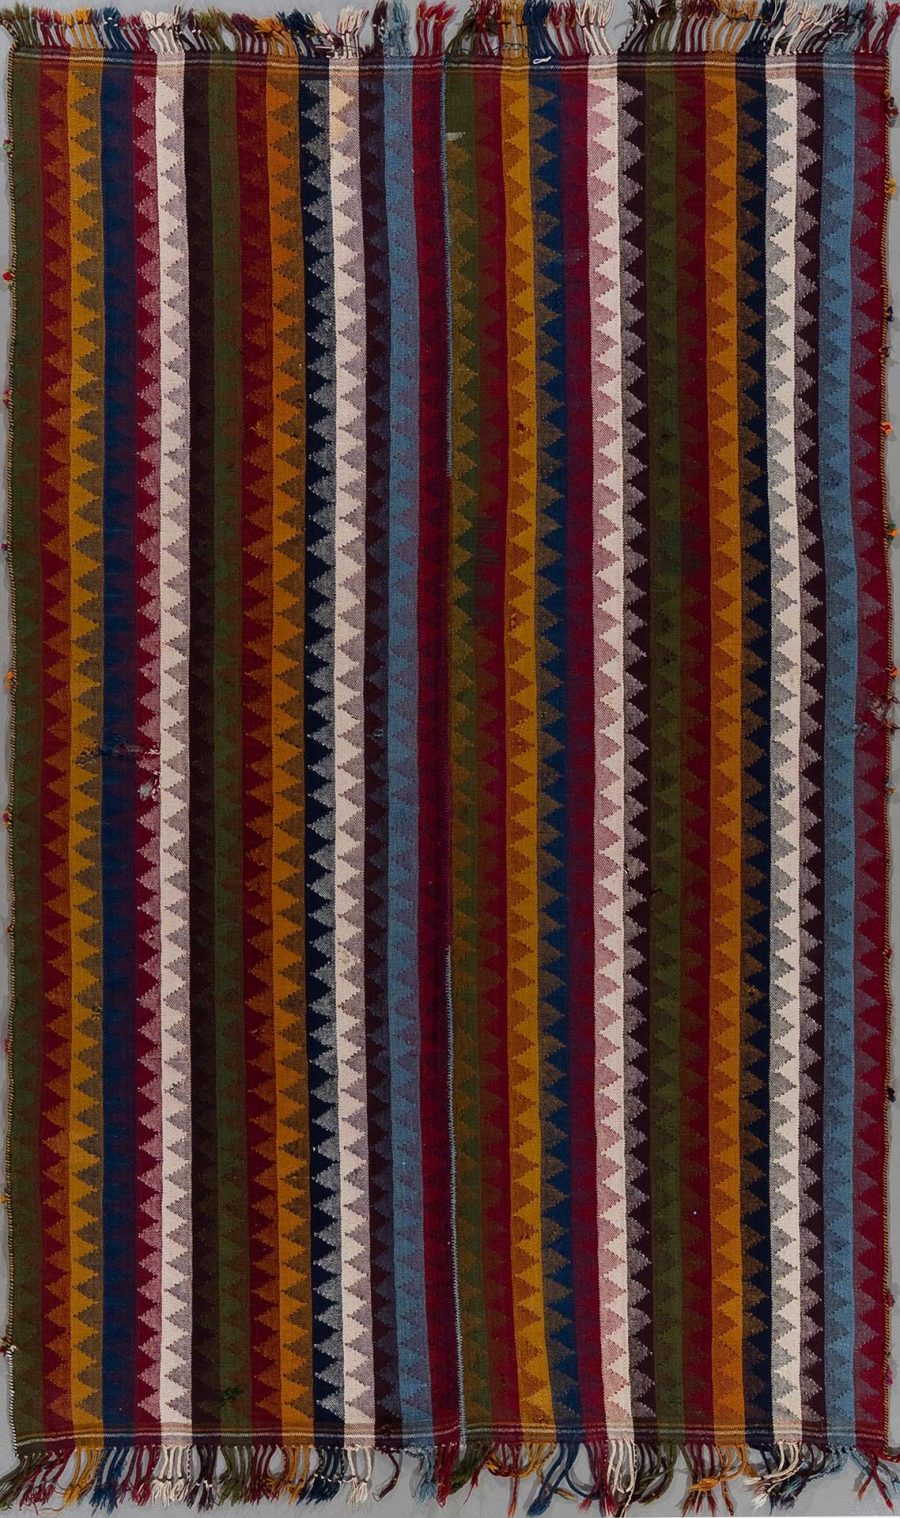 Vertikales Bild eines traditionellen, handgewebten Teppichs mit einem Muster aus mehrfarbigen vertikalen Streifen und gezackten Linien in verschiedenen Schattierungen von Rot, Blau, Braun und Weiß. Der Teppich hat Fransen an beiden Enden.